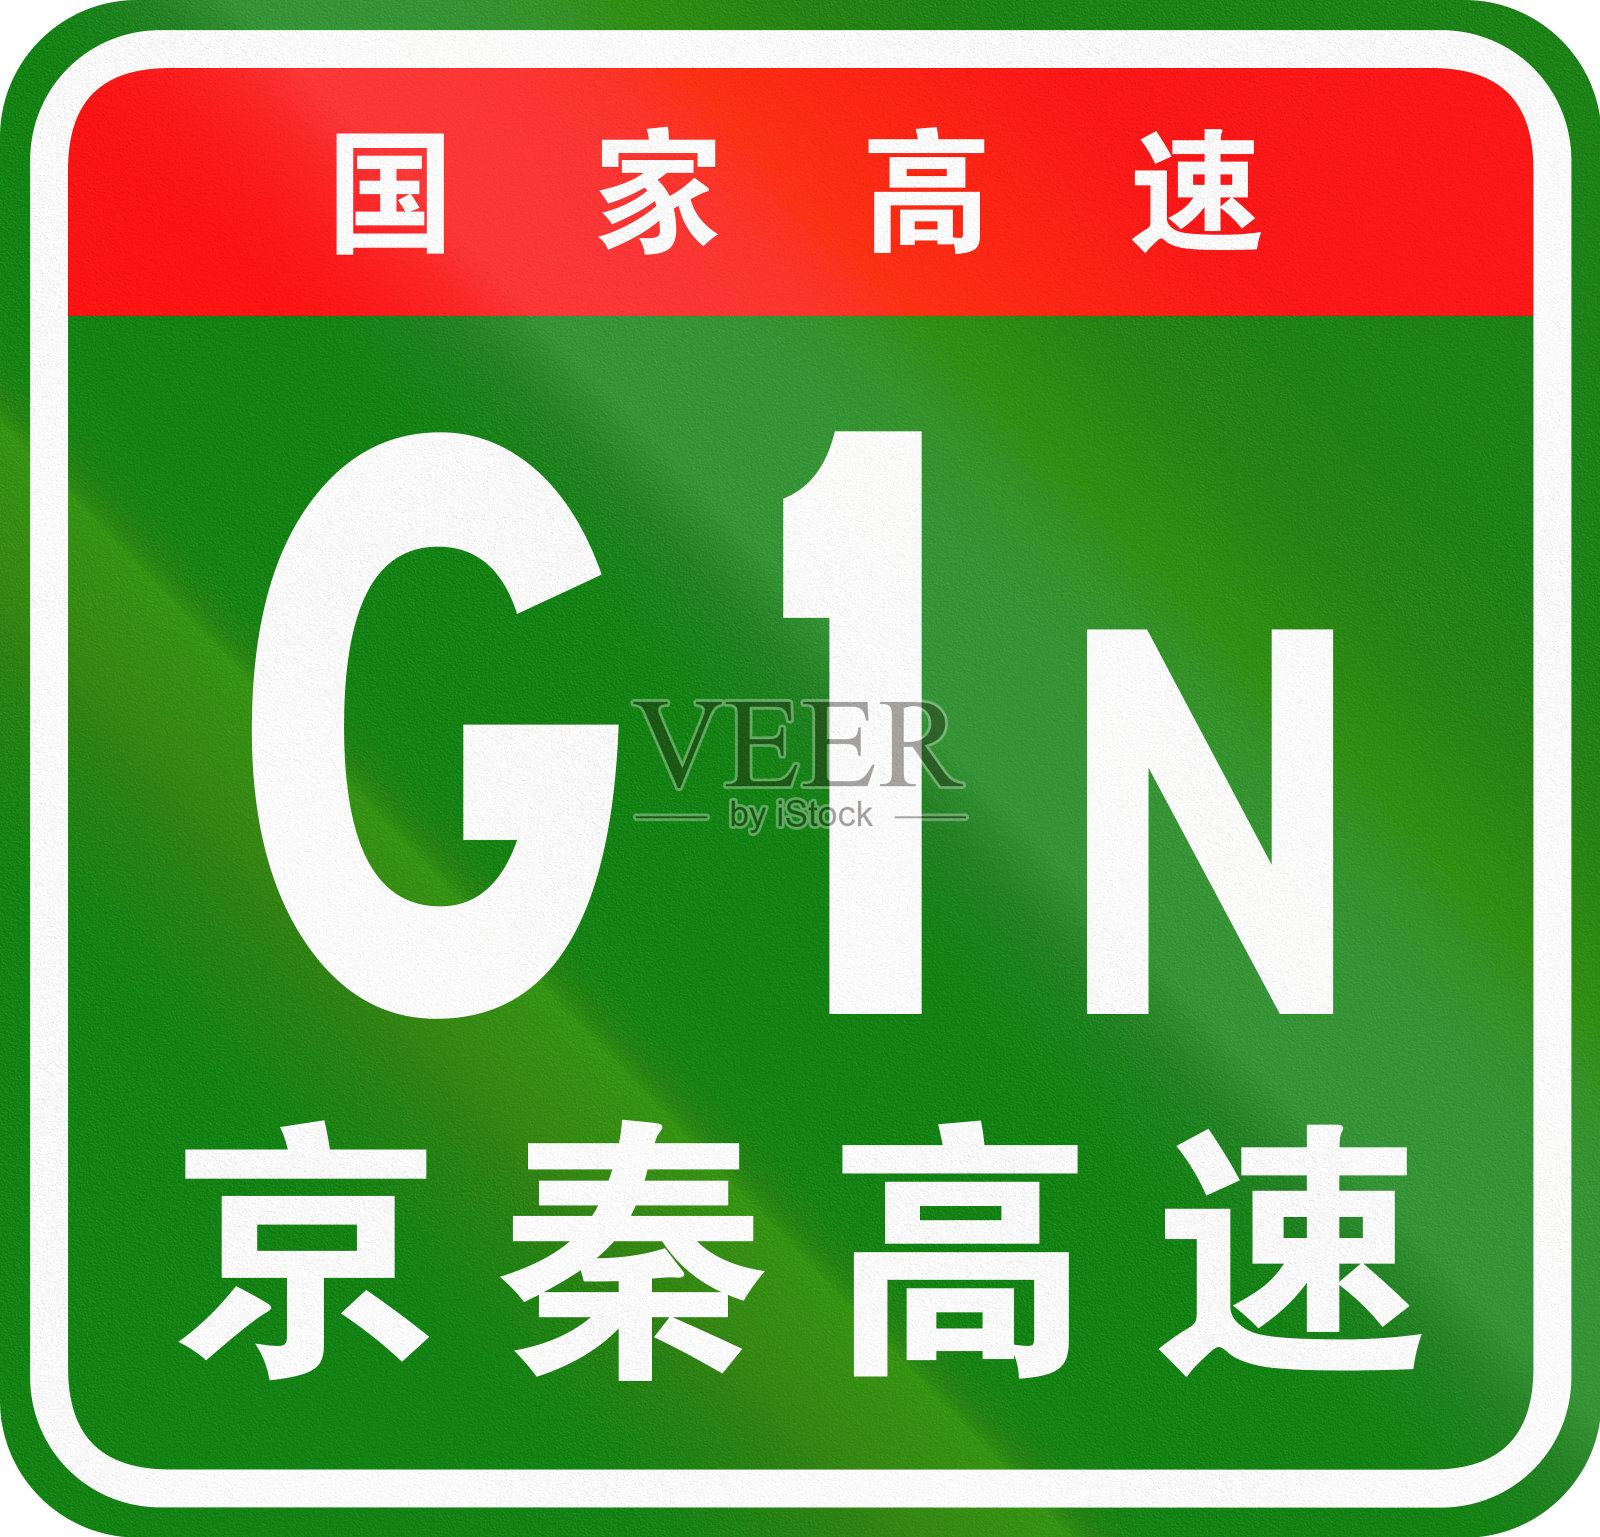 中国公路盾——上面的字表示中国国道，下面的字是高速公路的名称——京秦高速插画图片素材